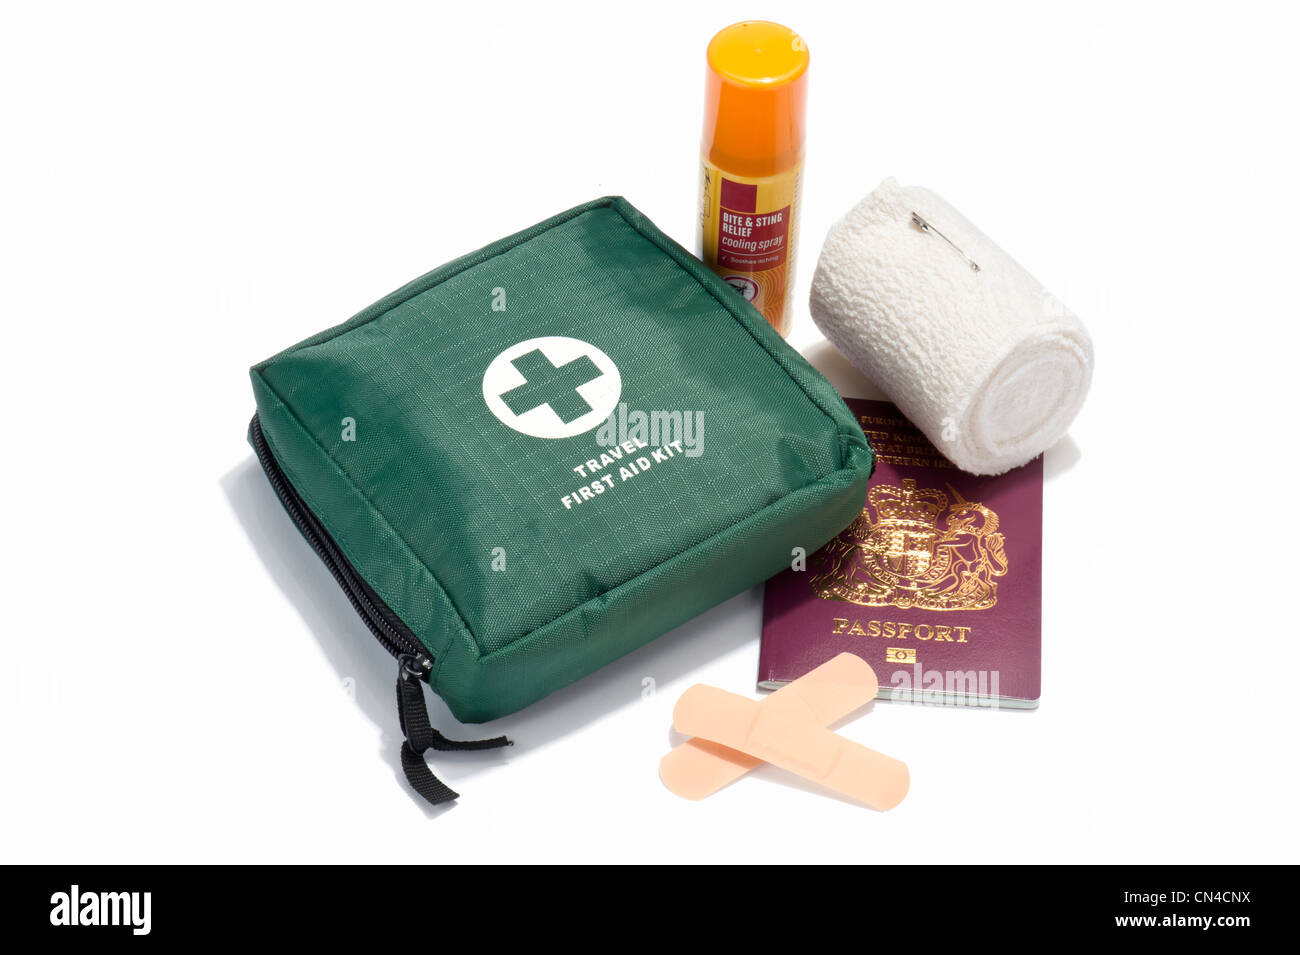 Billet d'une trousse de premiers soins, passeport britannique, d'insectes, de pulvérisation et des plâtres de bandage Banque D'Images